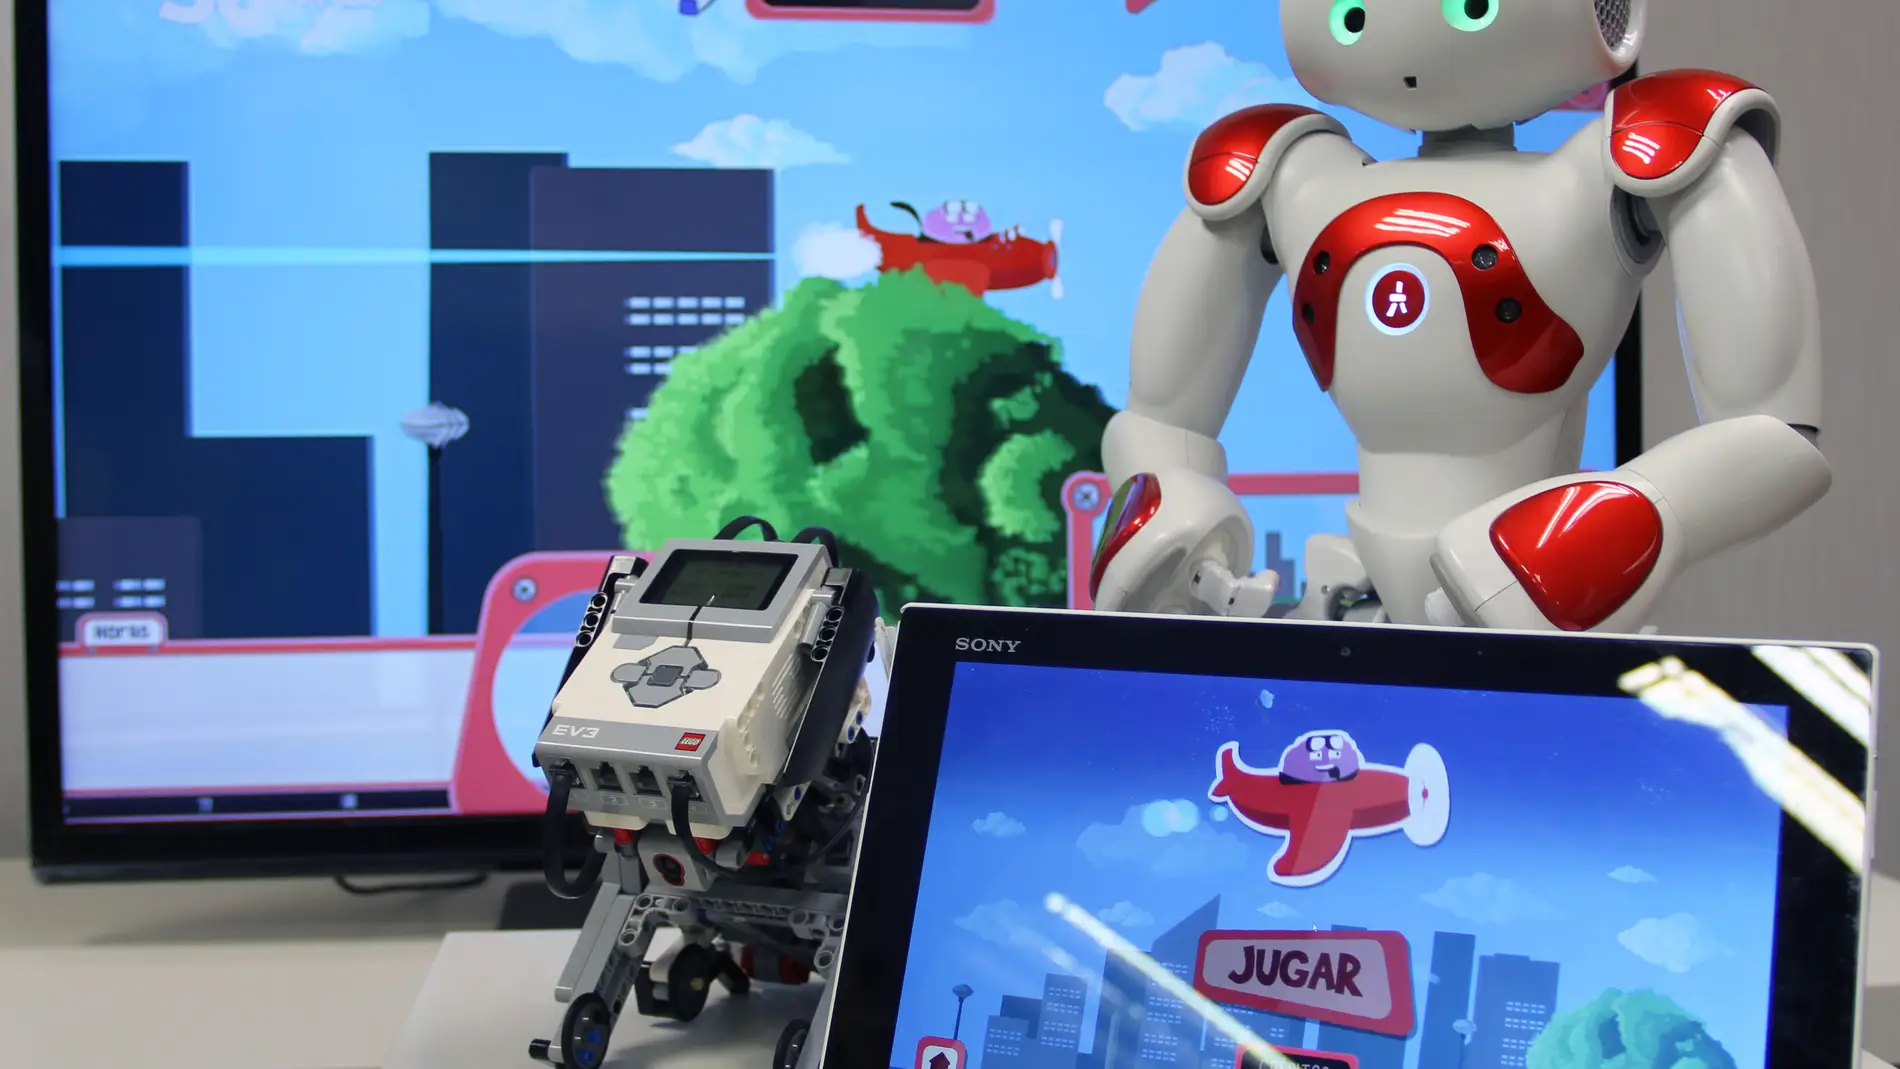 Videojuegos y robots para ensenar a gestionar la diabetes